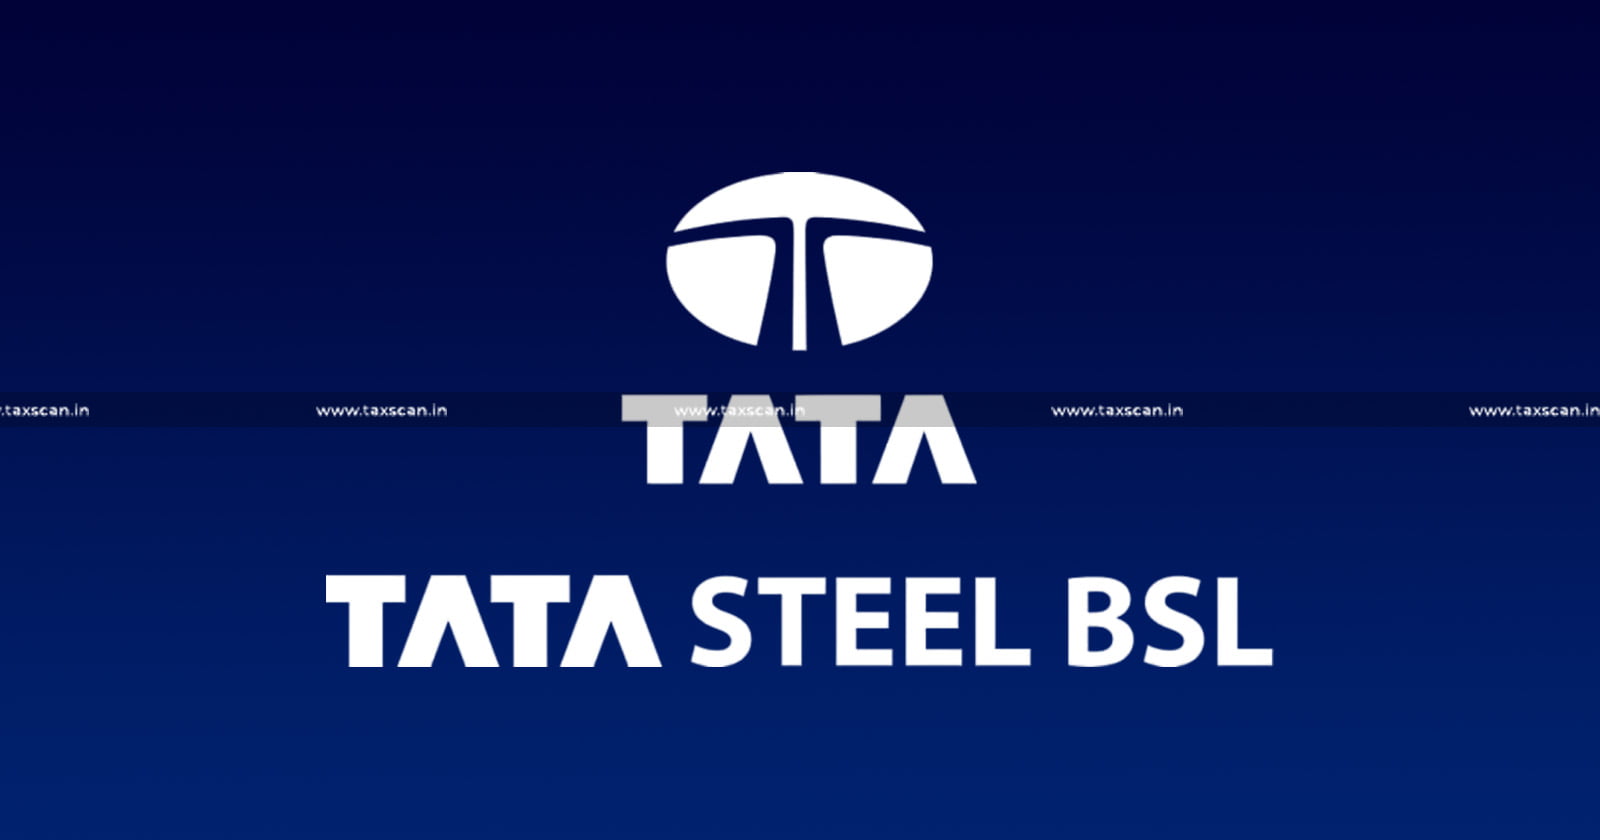 Tata Steel BSL Ltd - IBC - Resolution Plan - Delhi High Court - taxscan